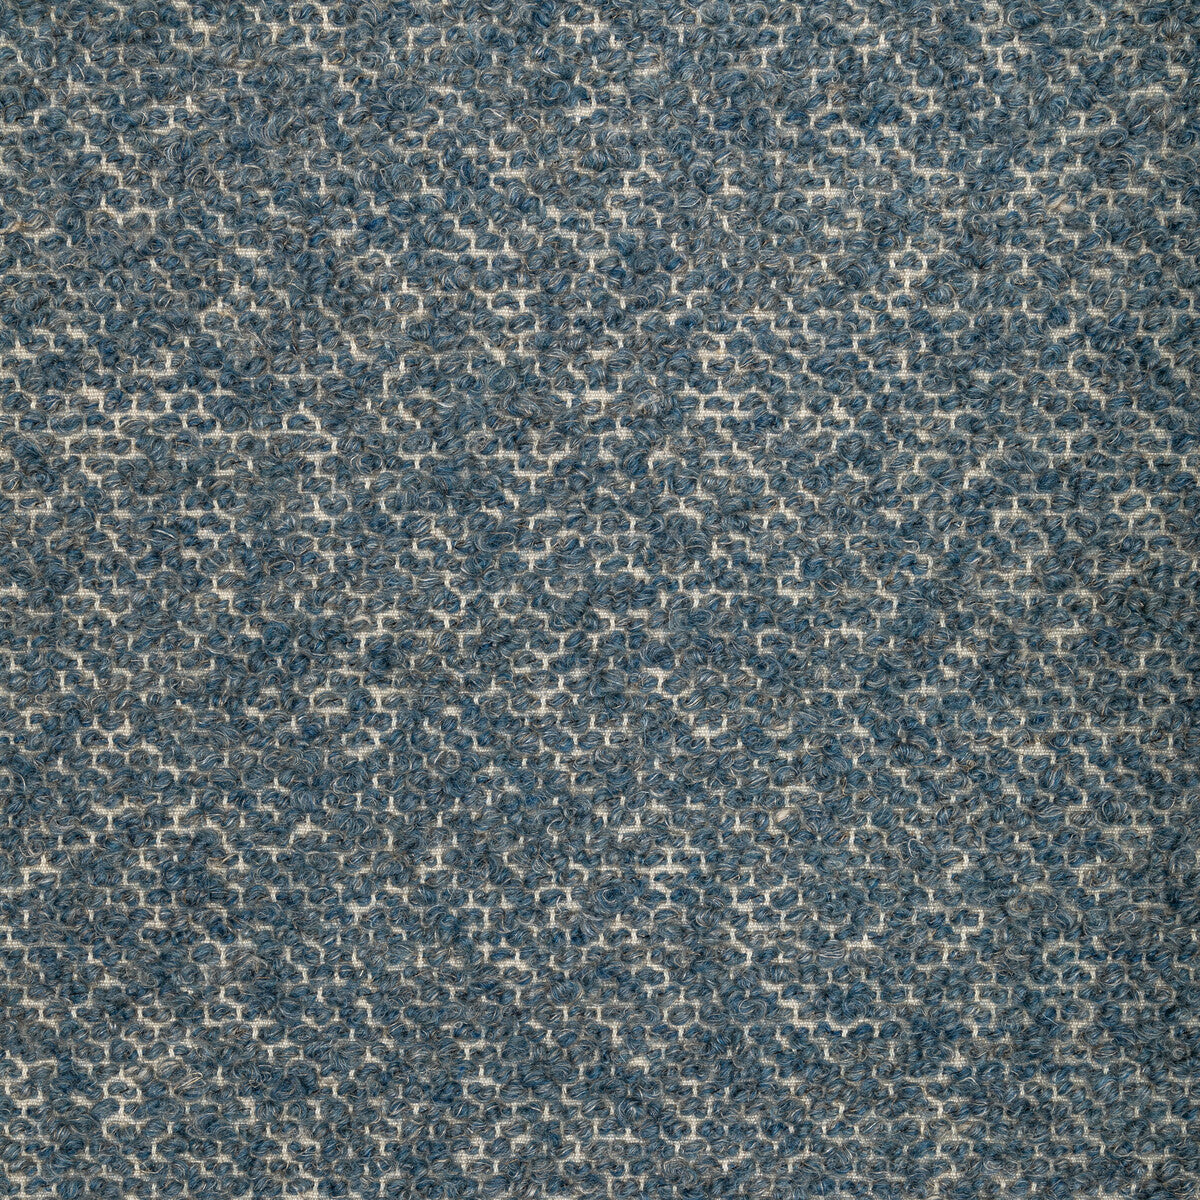 Kravet Design fabric in 36347-505 color - pattern 36347.505.0 - by Kravet Design